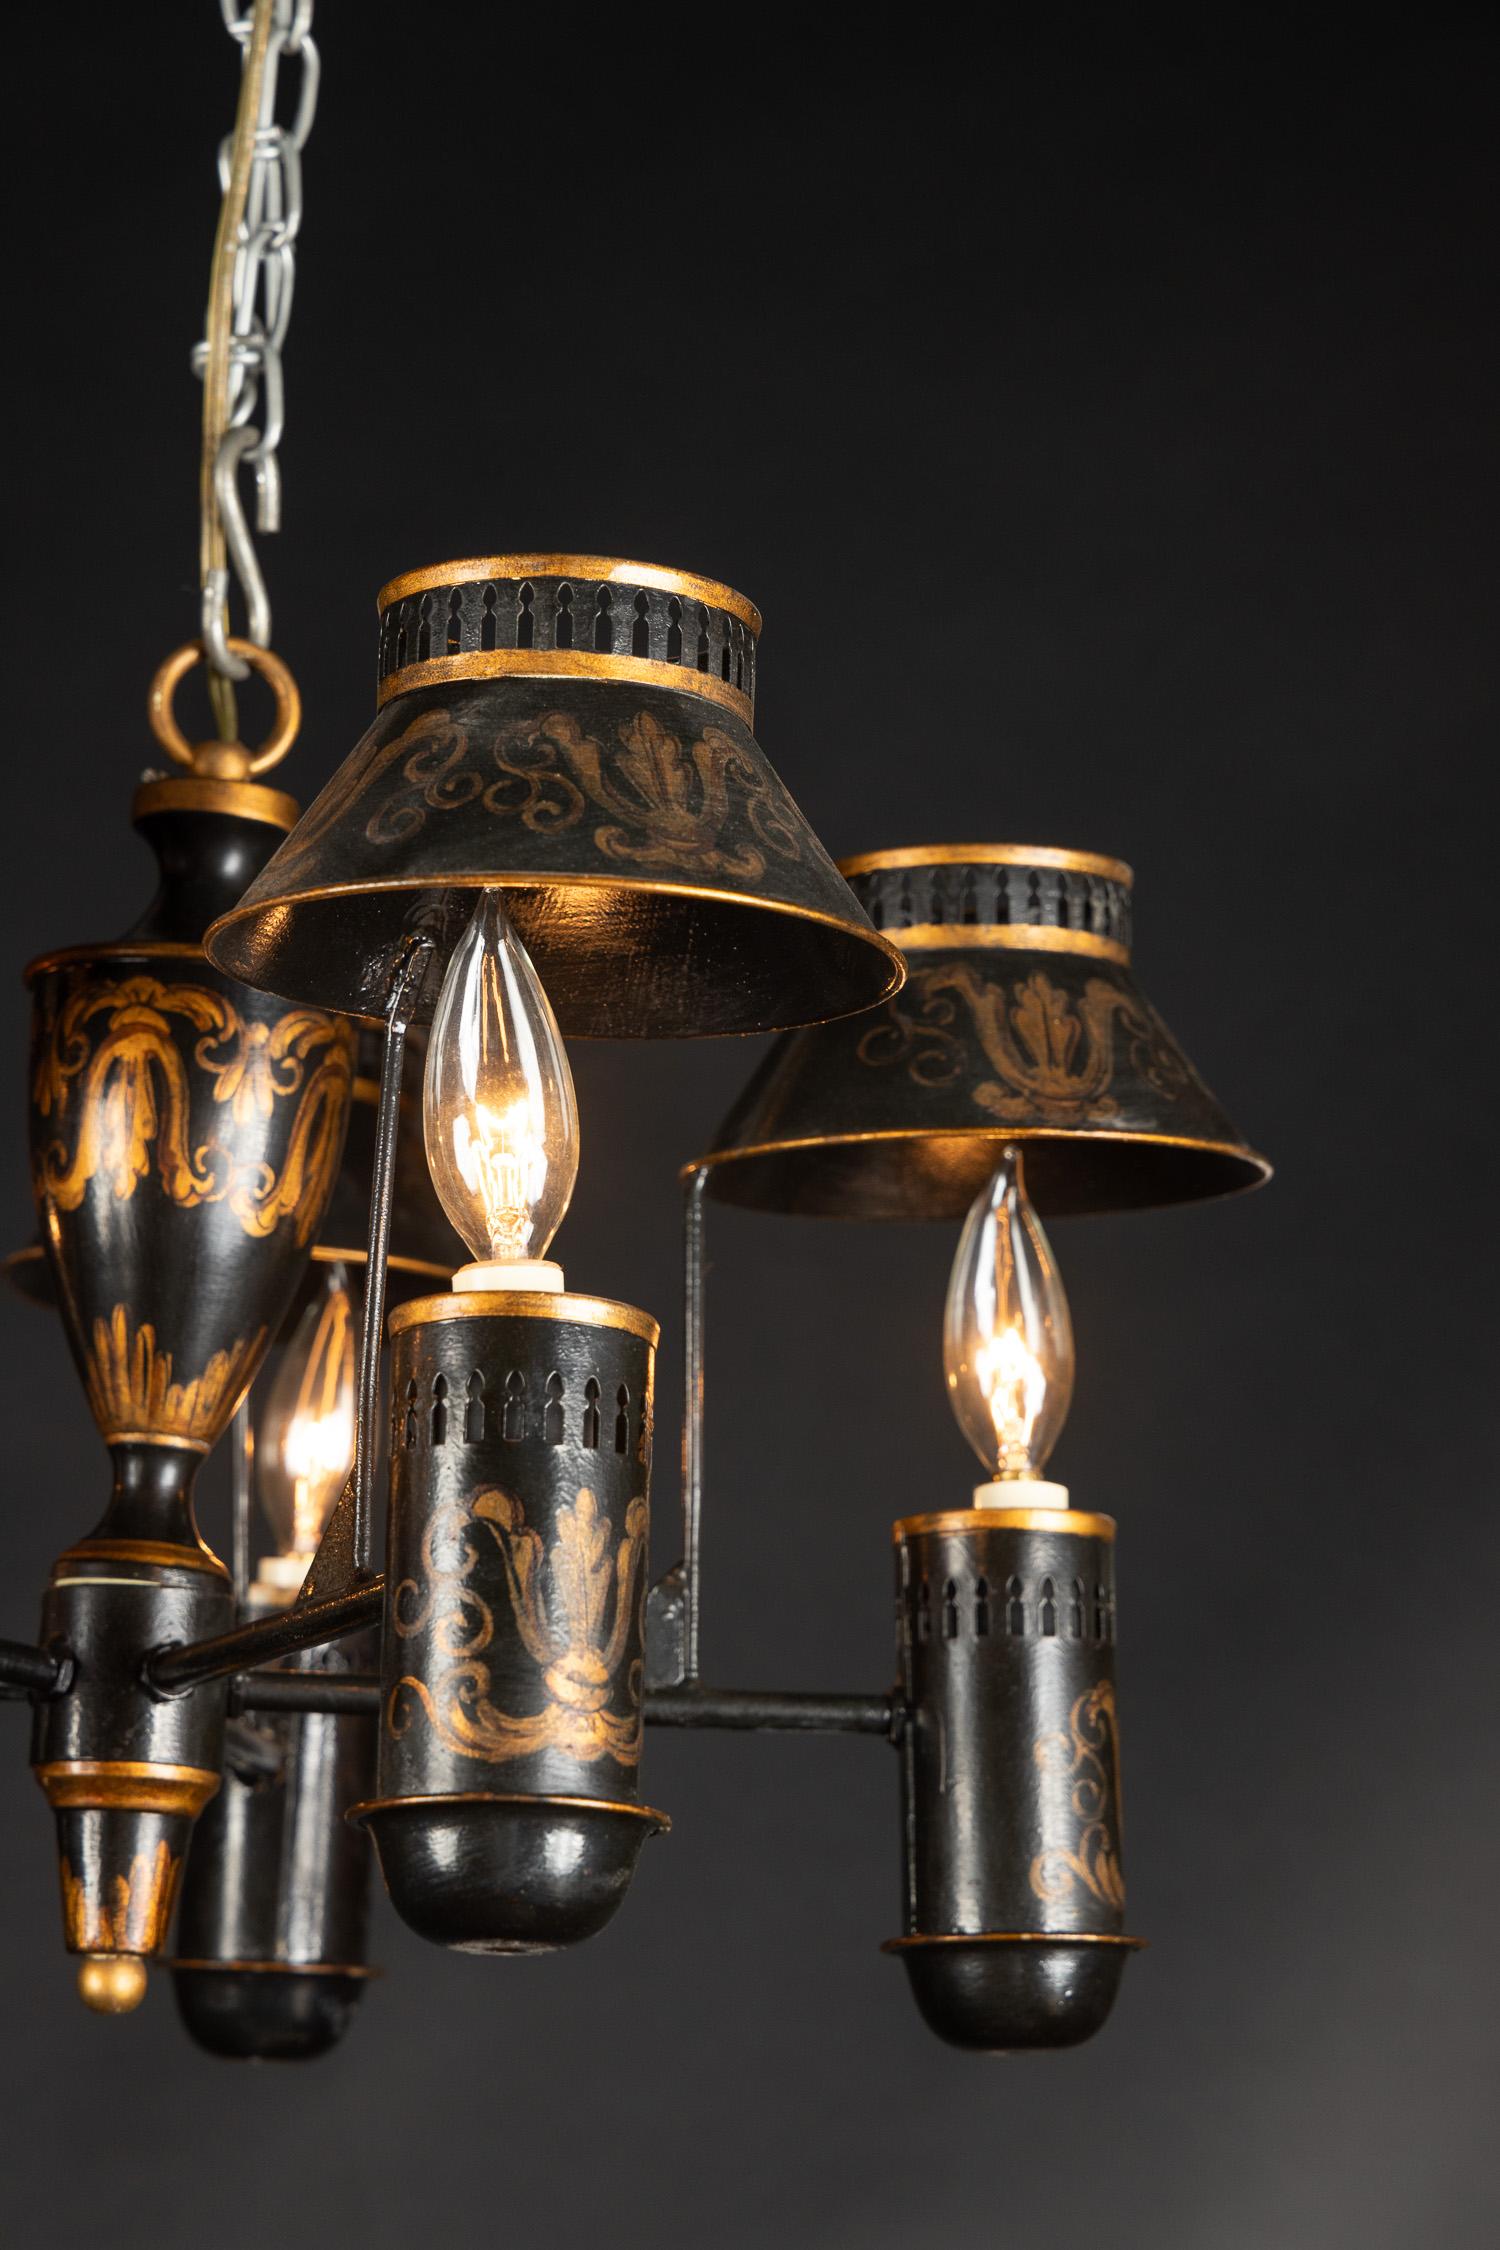 Ce magnifique lustre français à six lumières est fait de tole (étain) et date du milieu du 20e siècle. Le luminaire est peint à la main avec des volutes délicates et comporte des abat-jour au-dessus de chaque lampe. Les abat-jour sont percés en